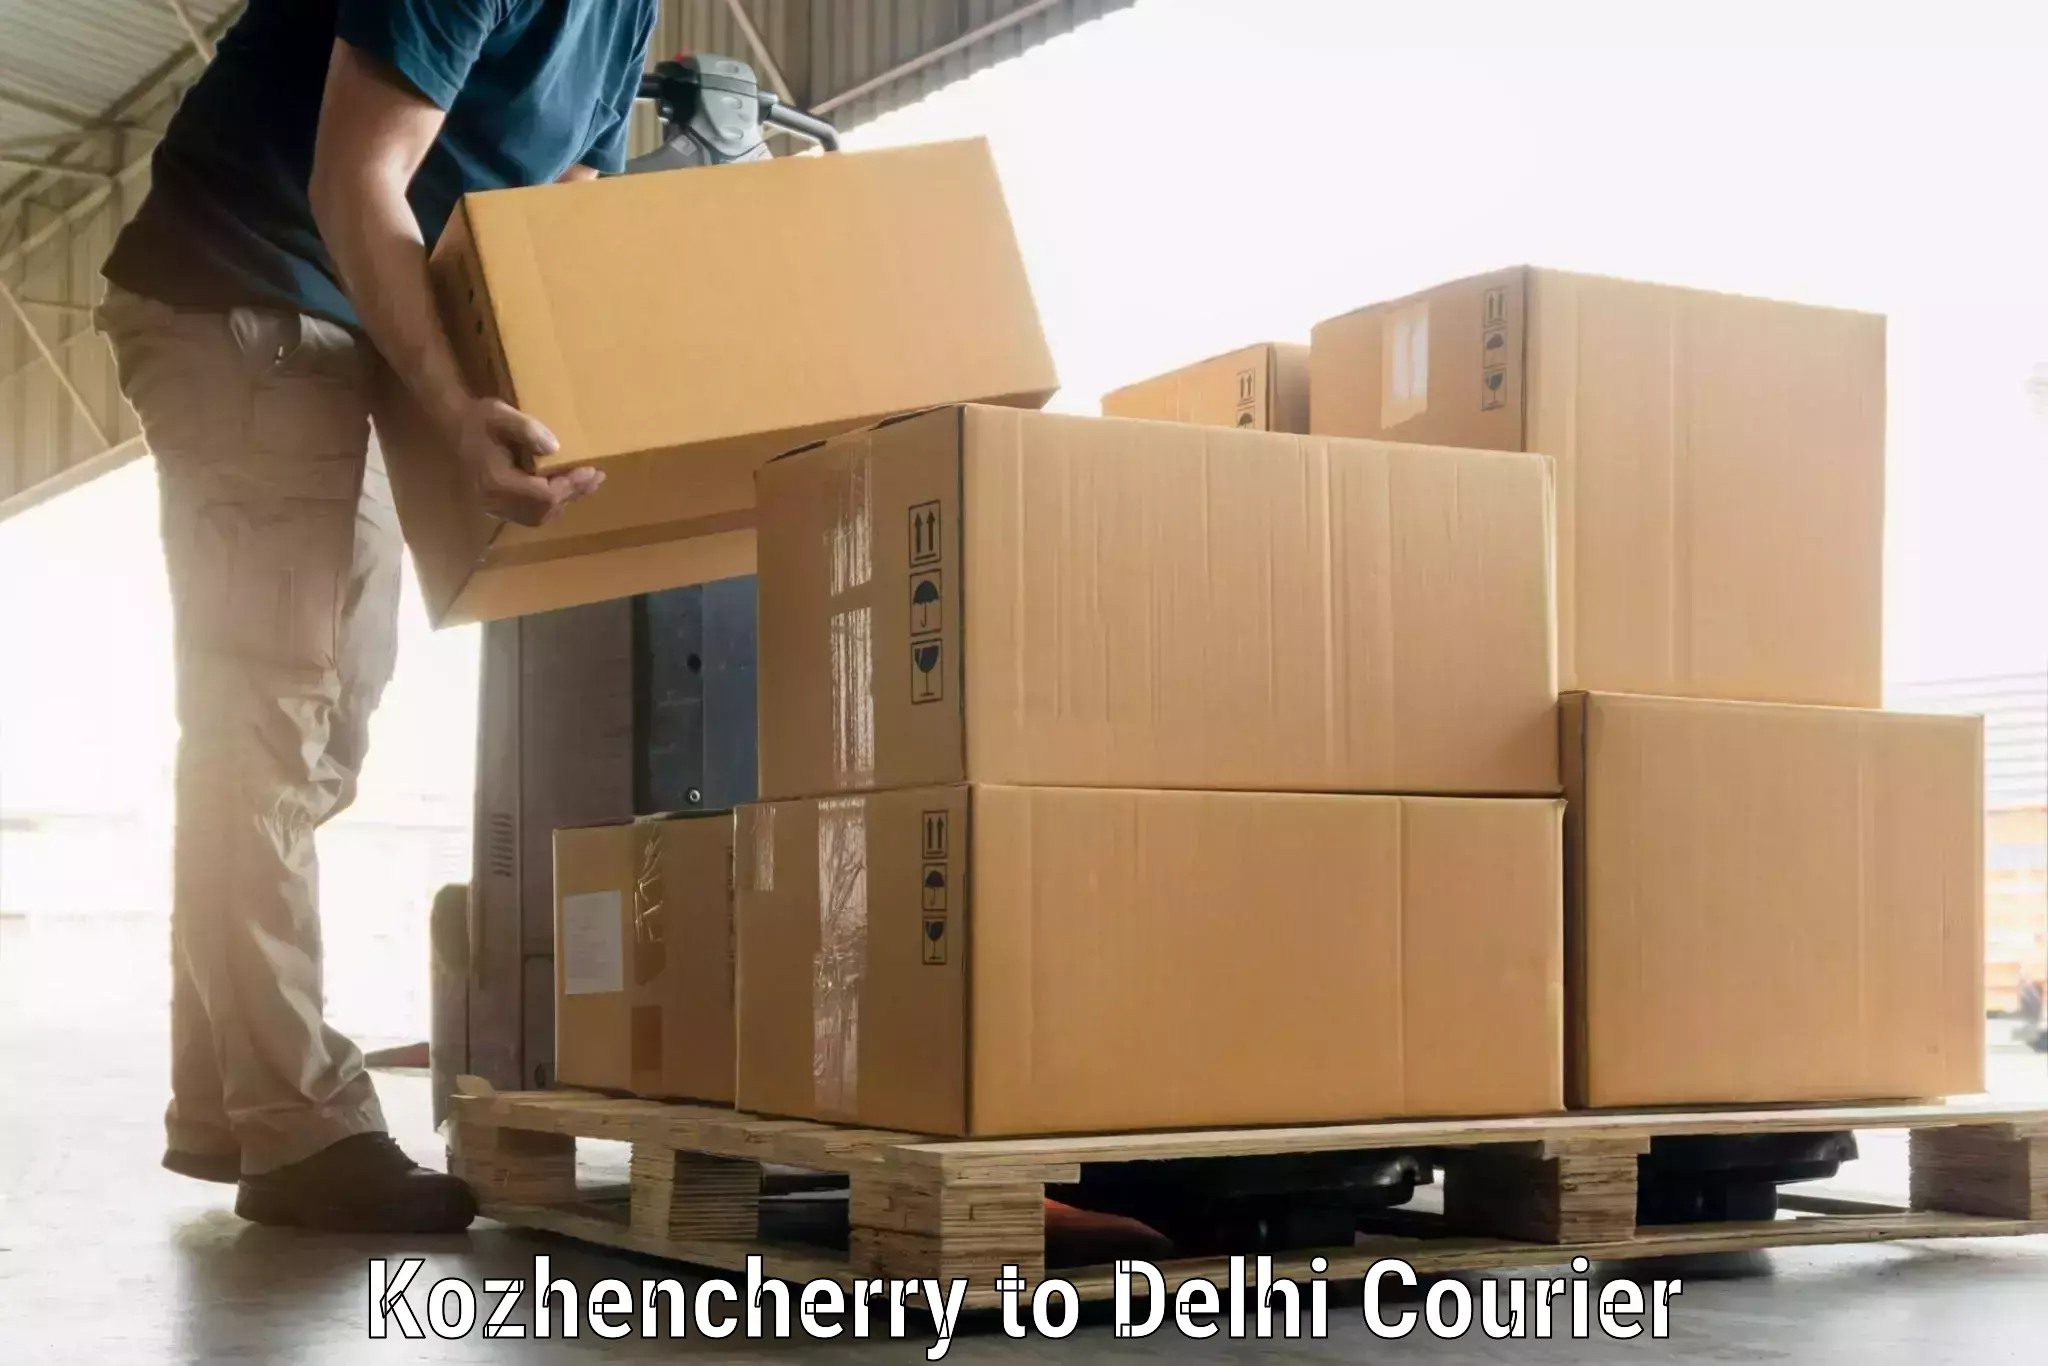 Luggage shipment specialists Kozhencherry to Delhi